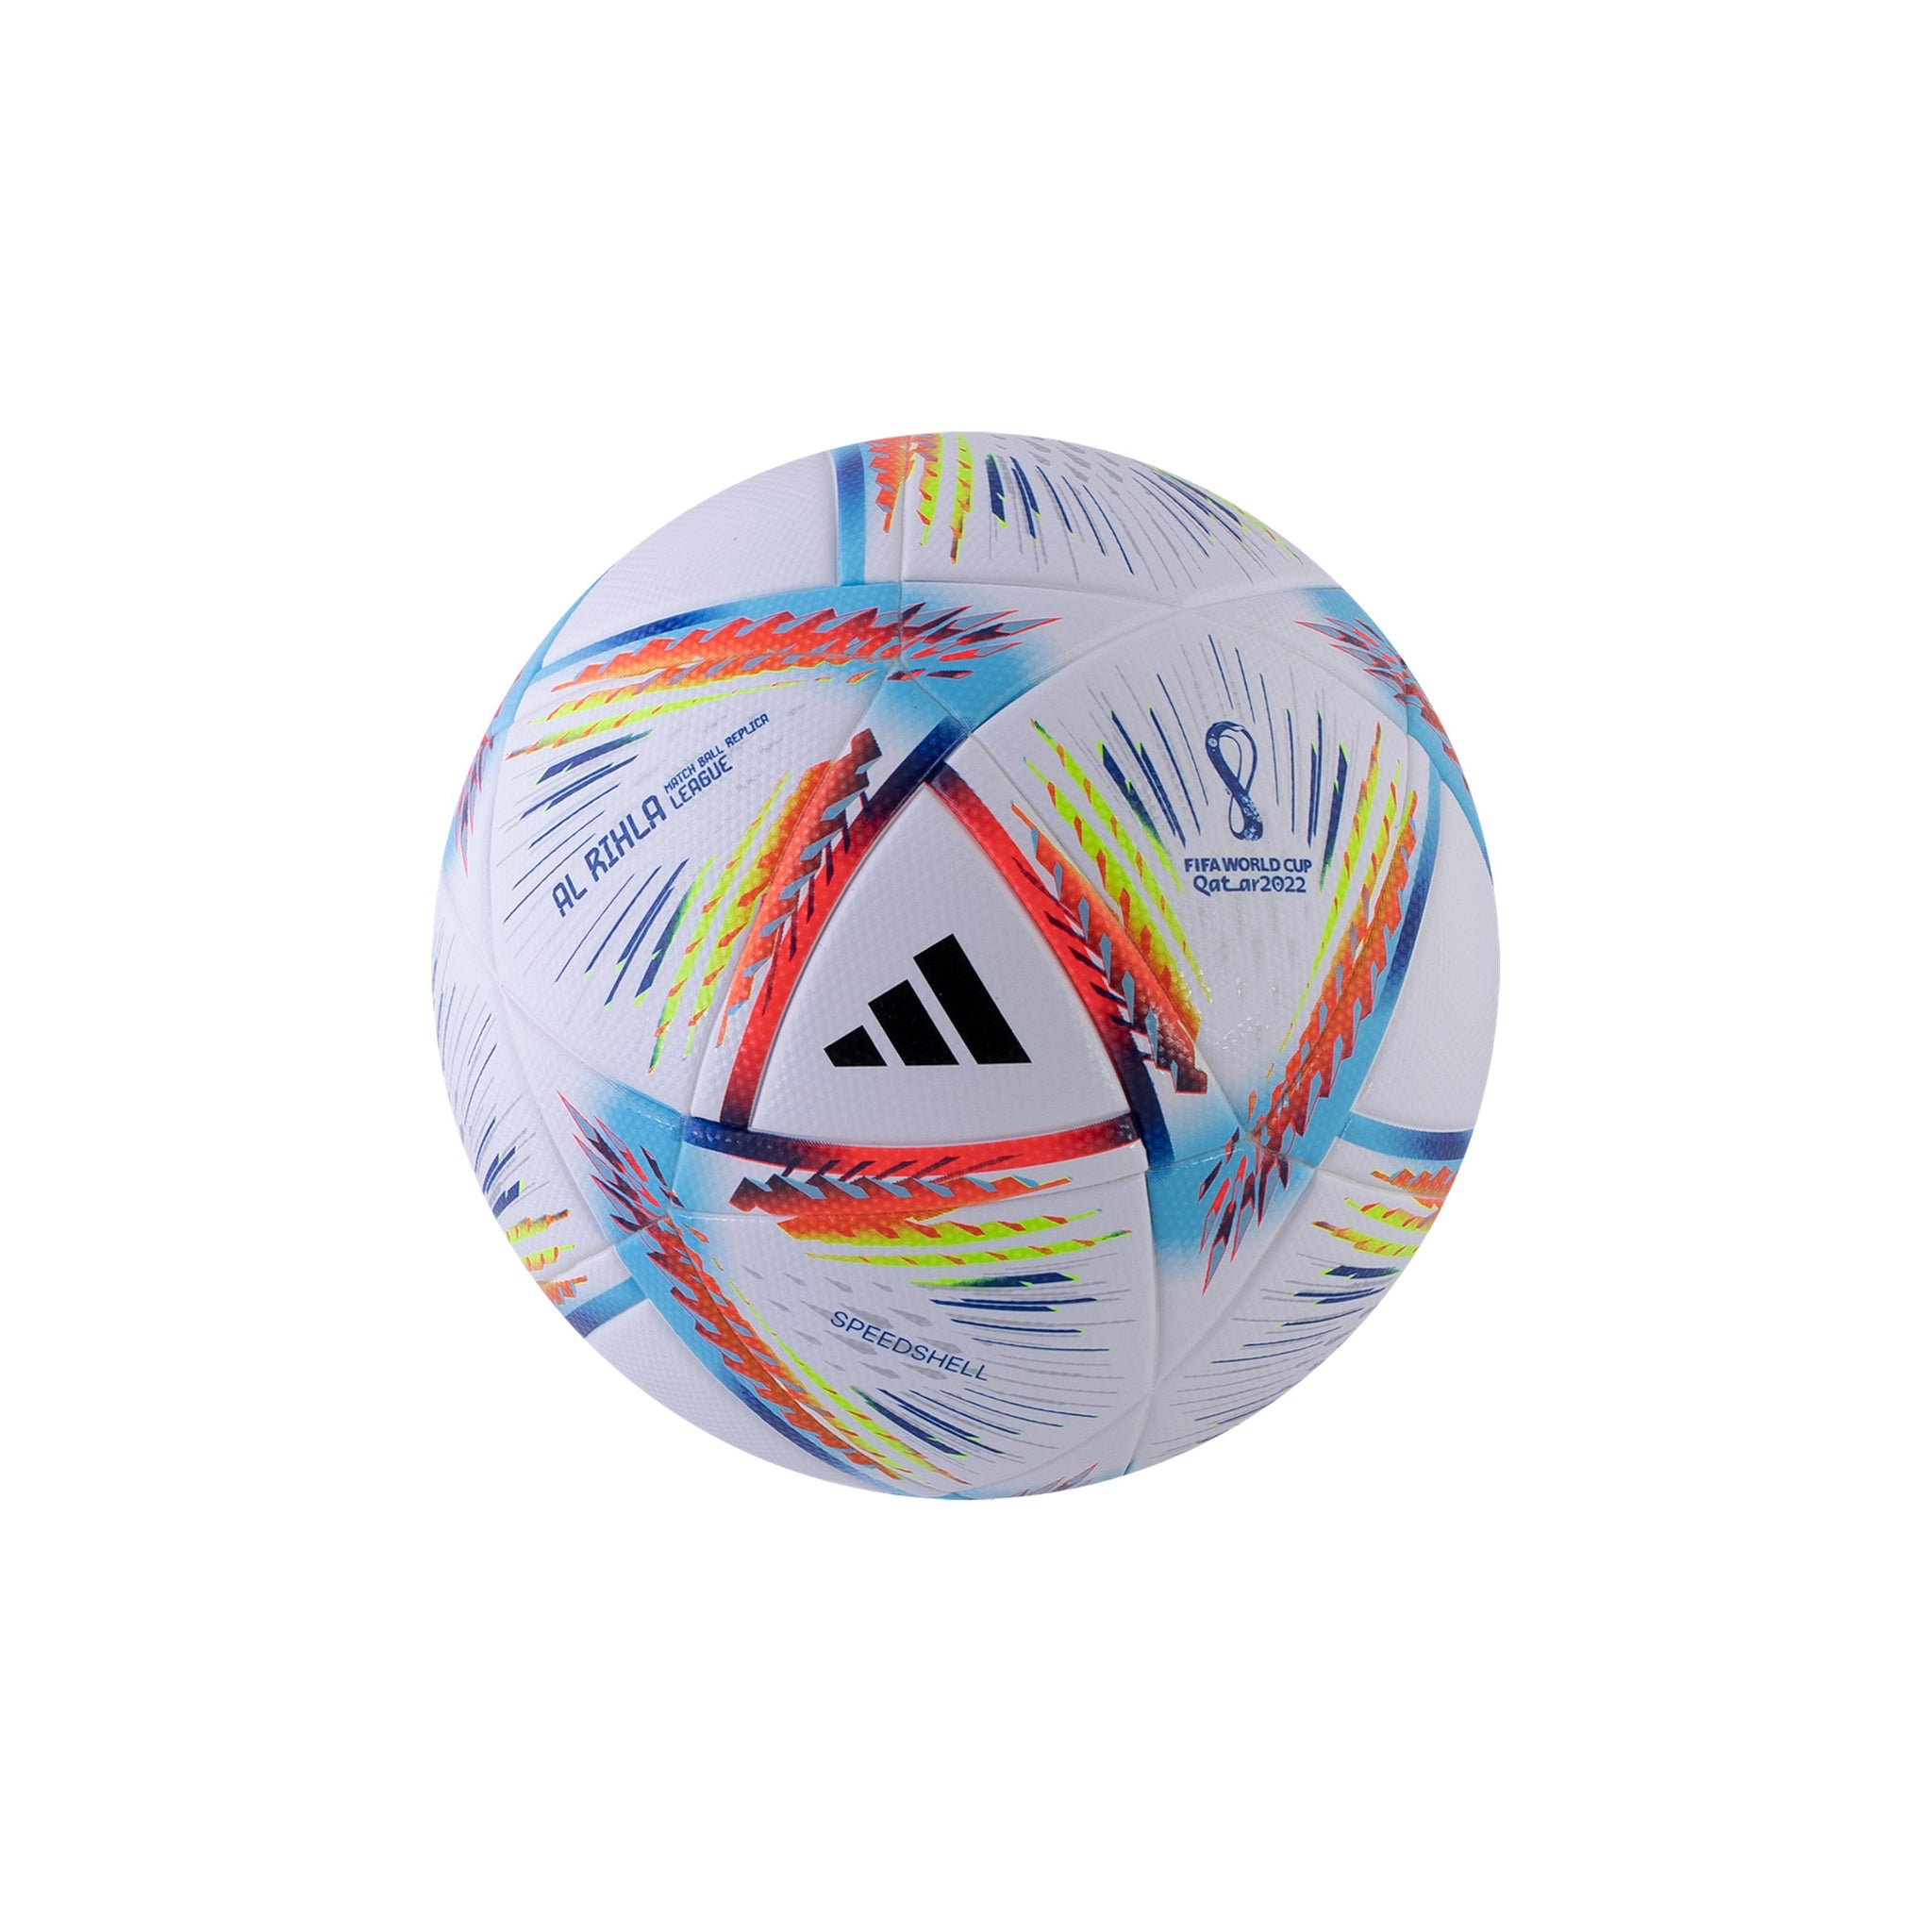 ADIDAS Al Rihla FIFA World Cup Qatar 2022 League Ball